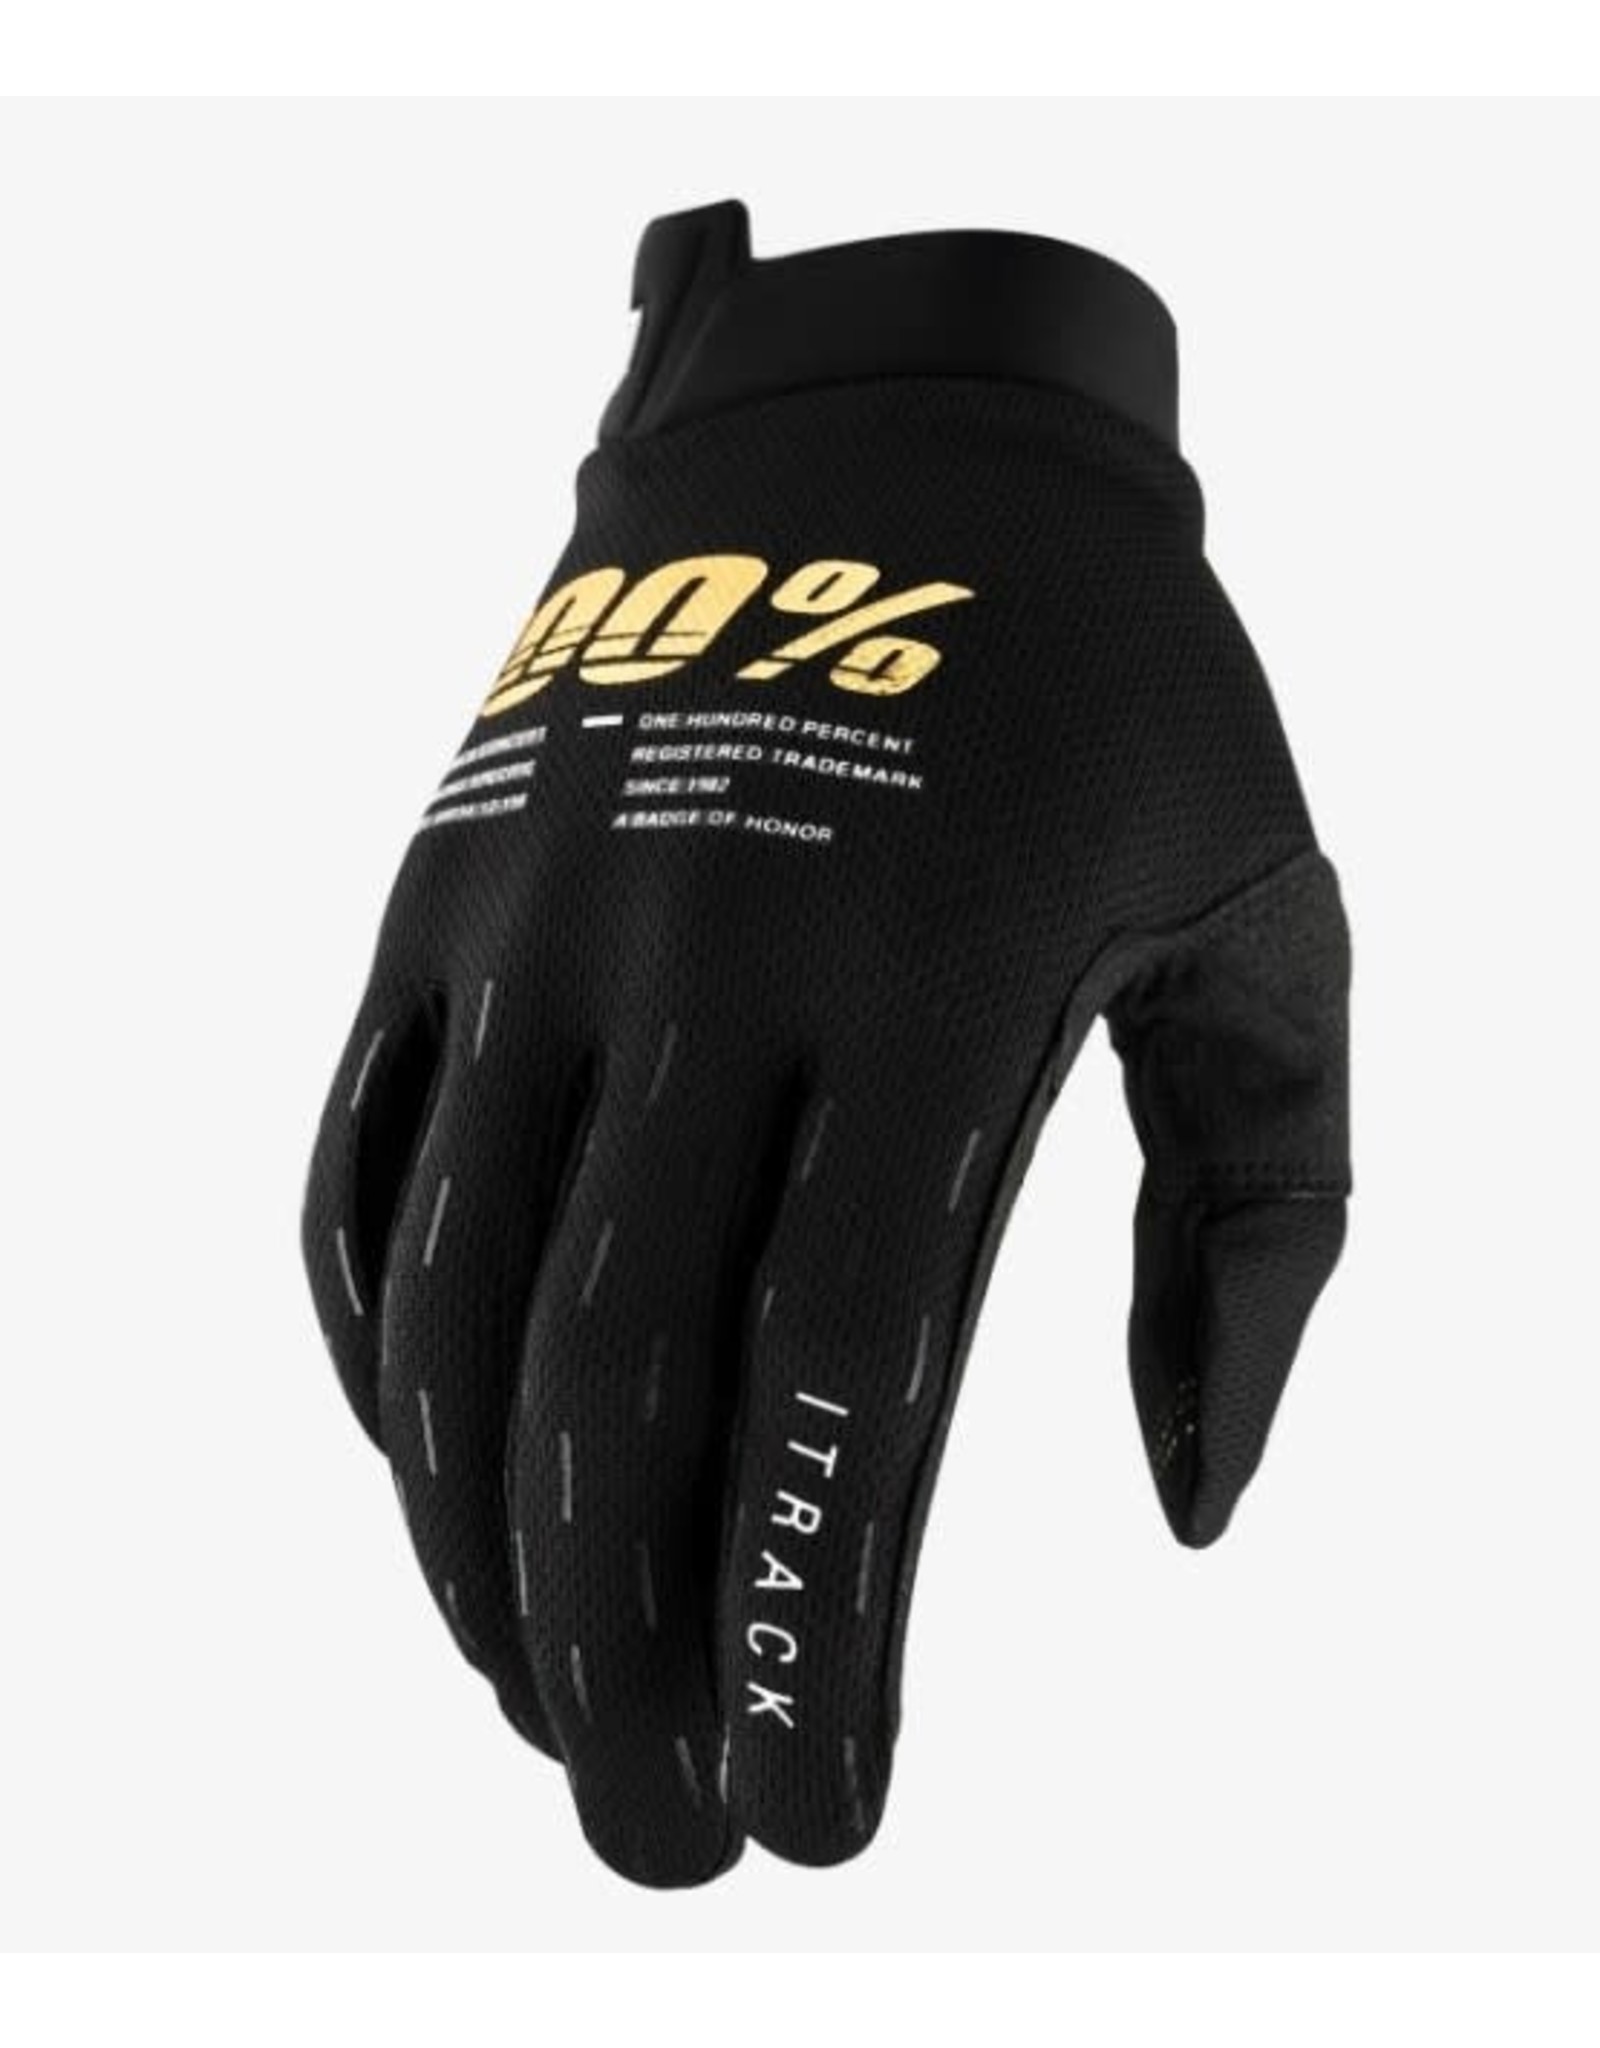 100% Gloves 100% iTrack